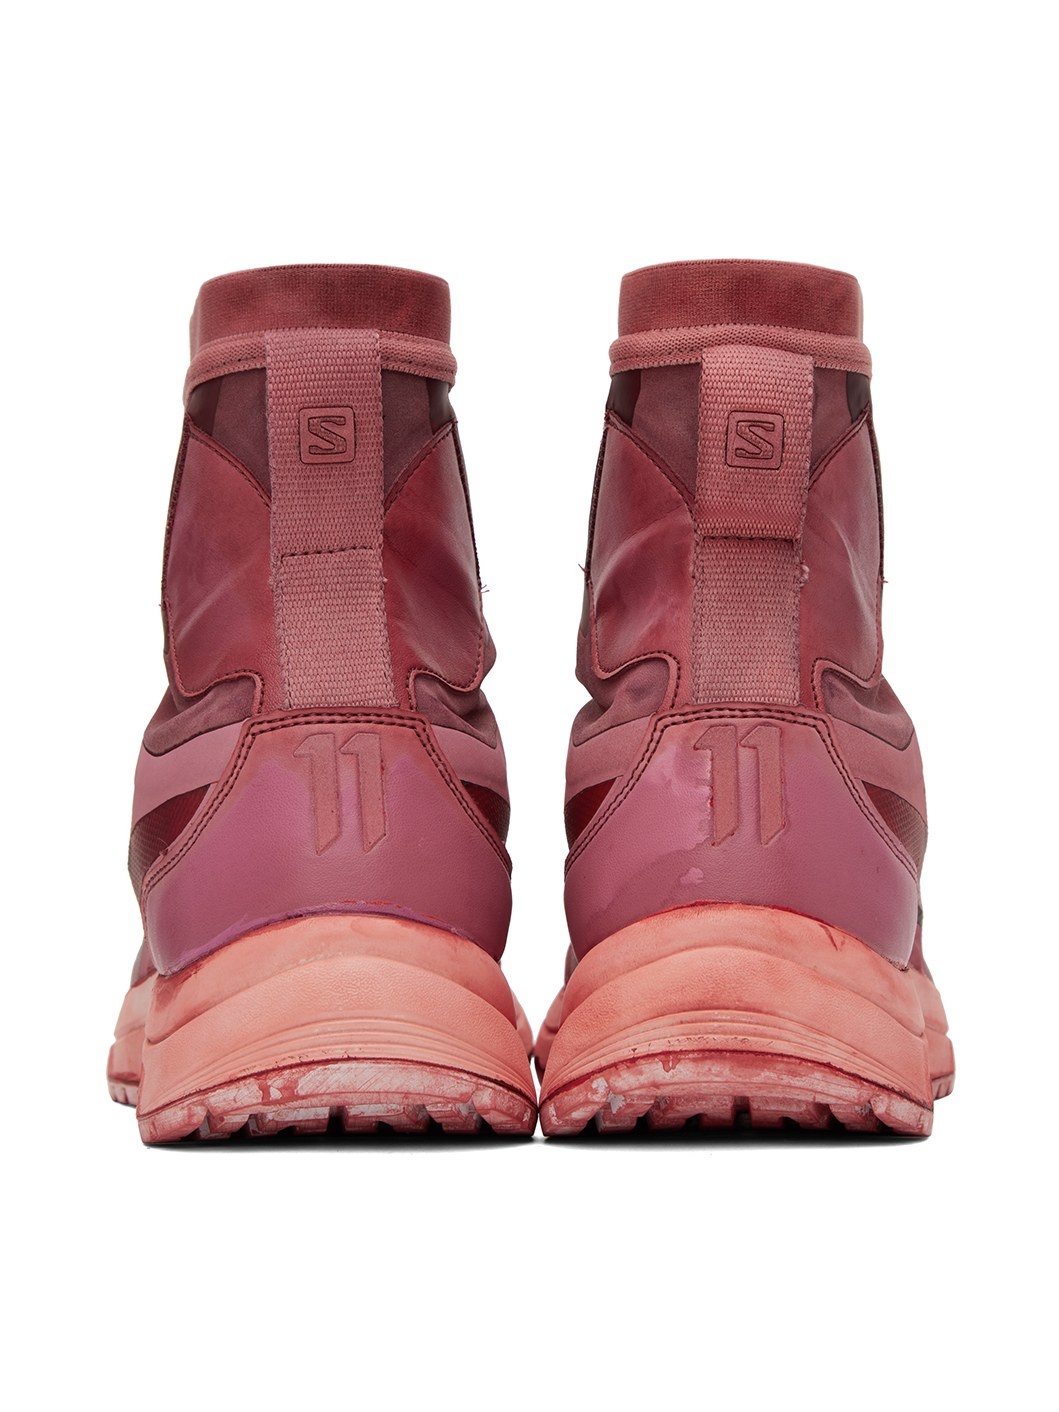 Red Salomon Edition Bamba 2 GTX High Sneakers - 2